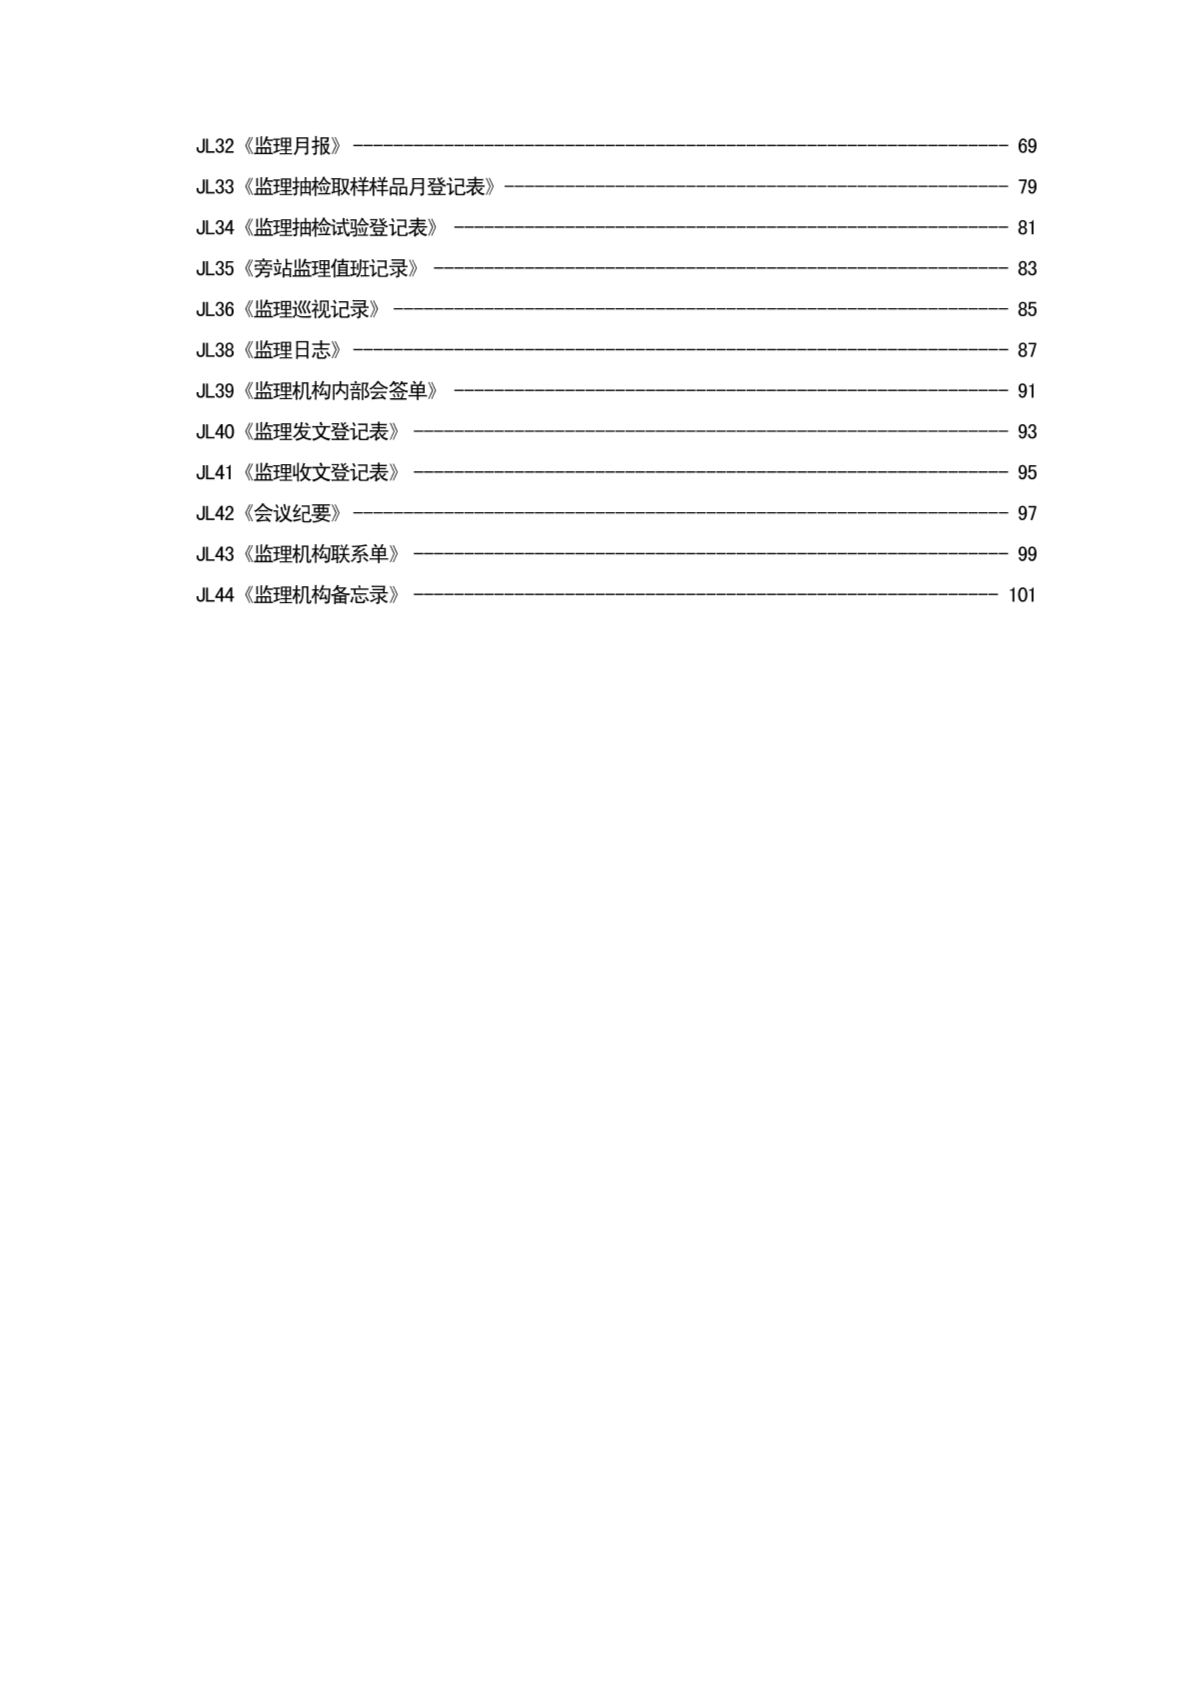 水利工程建设项目施工监理规范(SL288-2003)监理机构用表填表说明及示例-图二